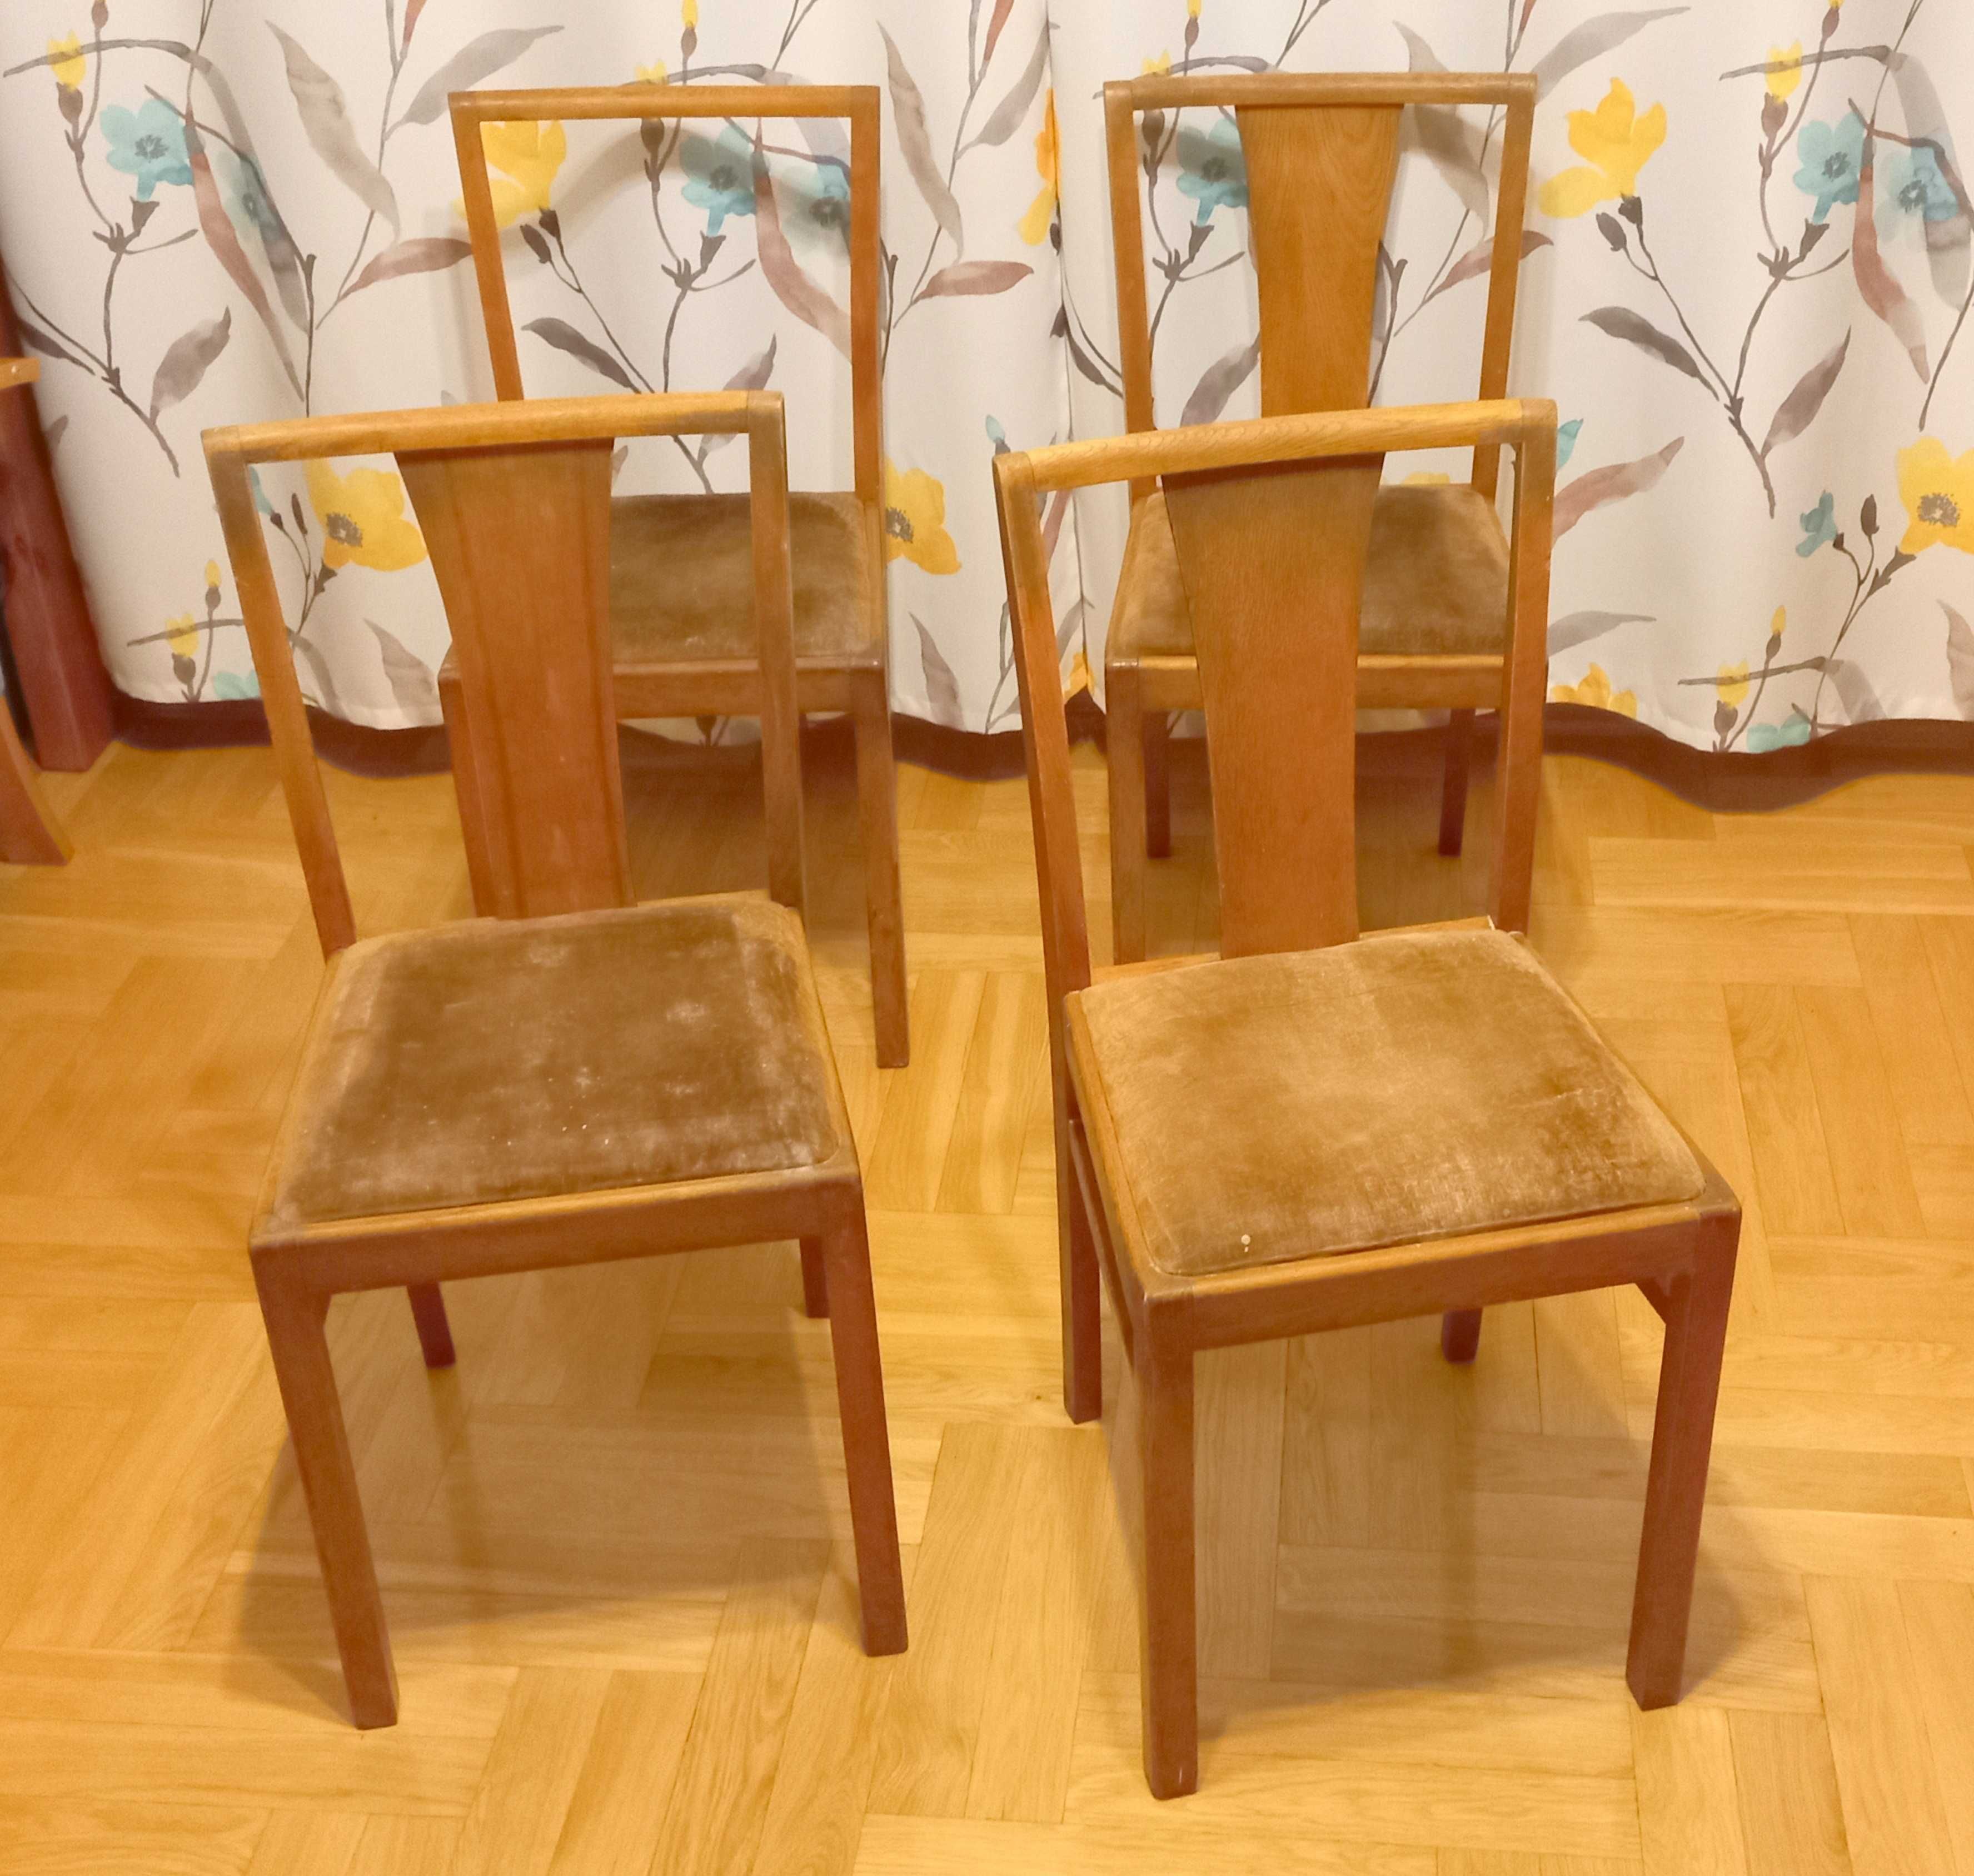 4 Krzesła - polski Design, PRL '60 Vintage  do renowacji odnowienia.